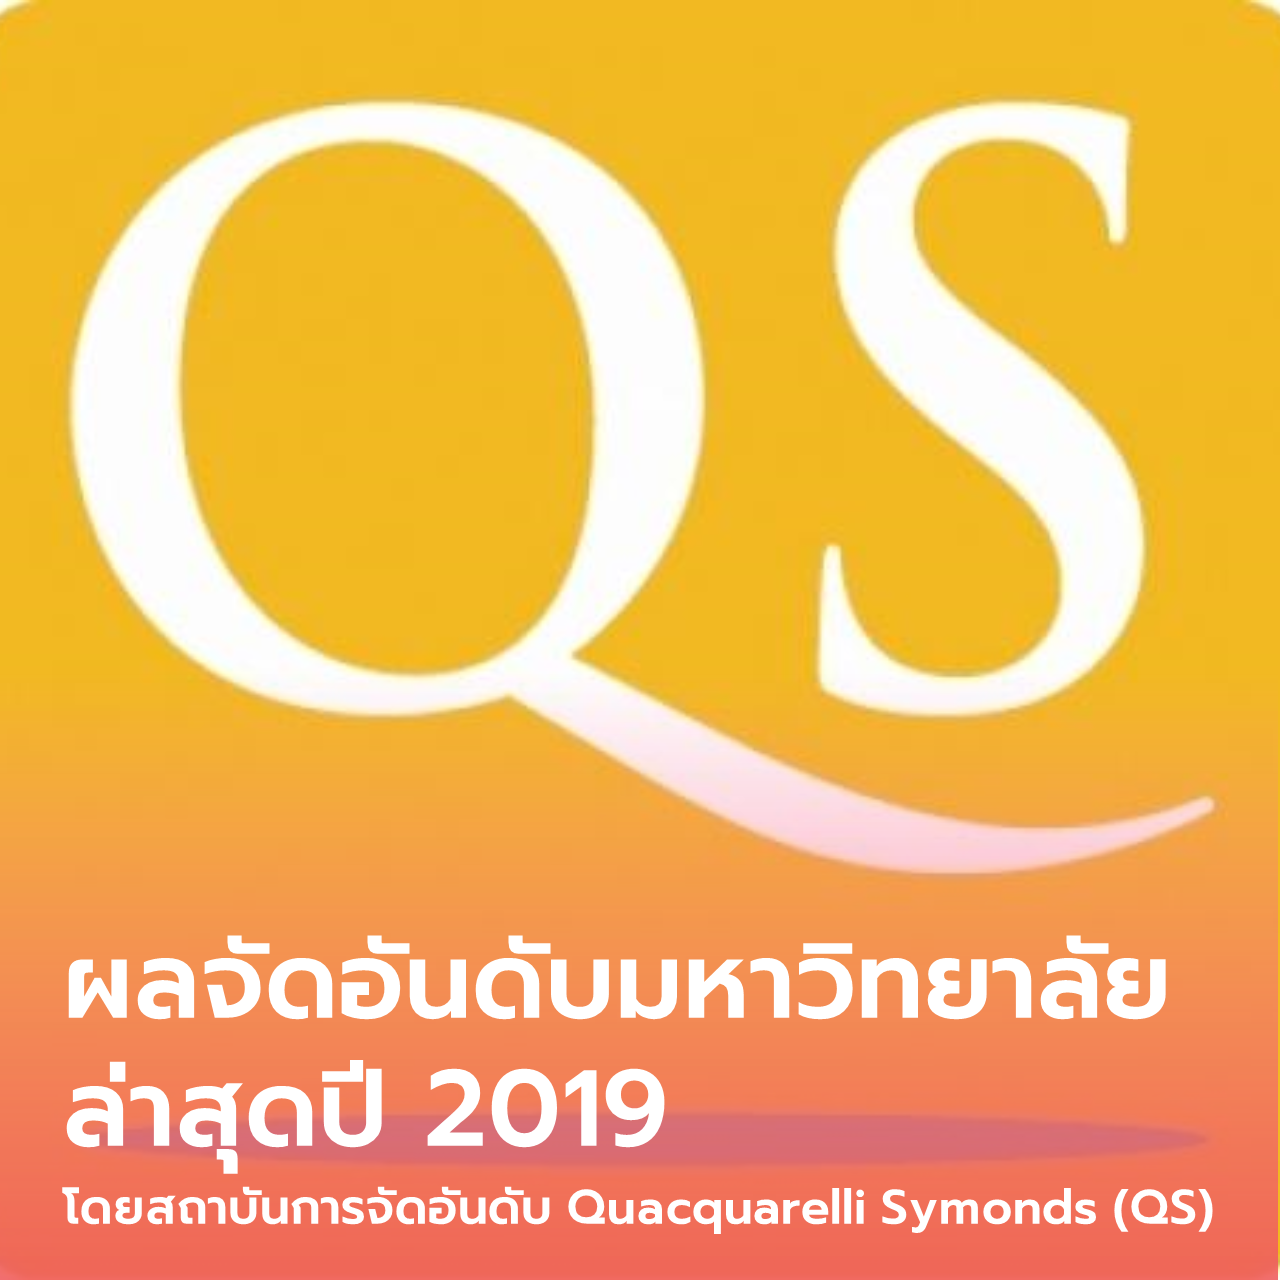  ผลจัดอันดับมหาวิทยาลัยล่าสุดปี 2019 โดยสถาบันการจัดอันดับ Quacquarelli Symonds (QS)